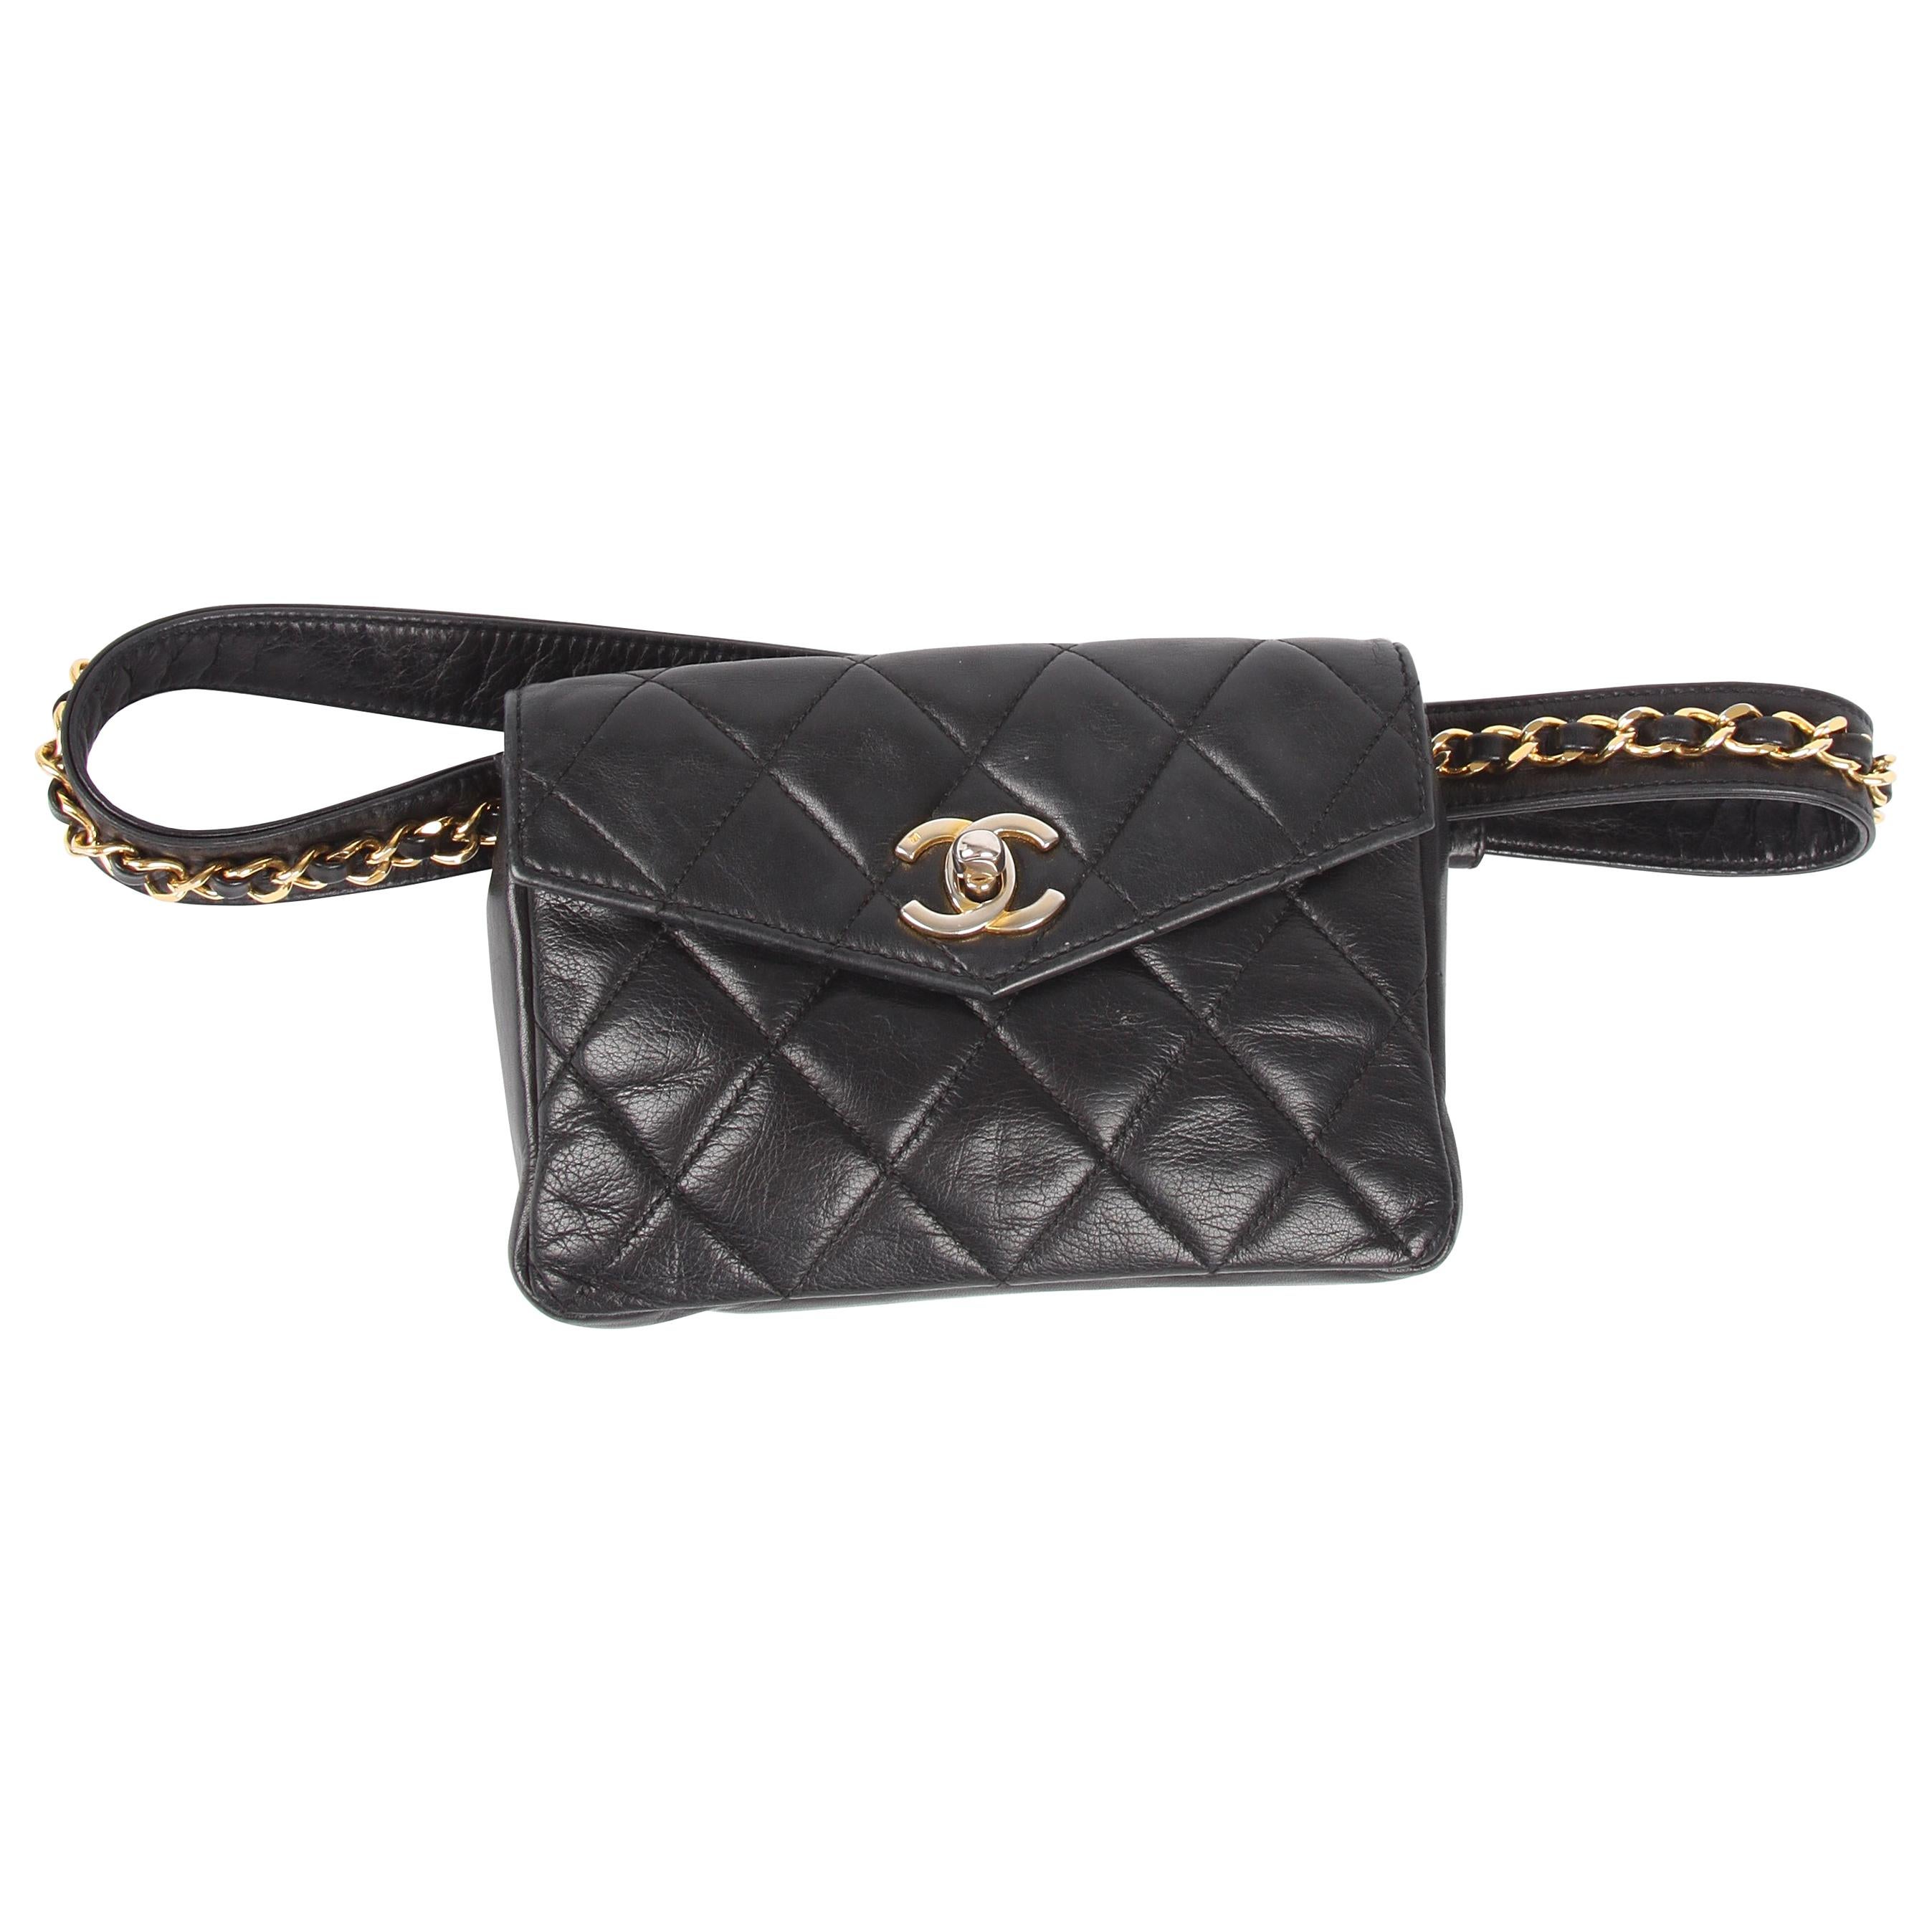 Chanel Belt Bag Leather - black/gold